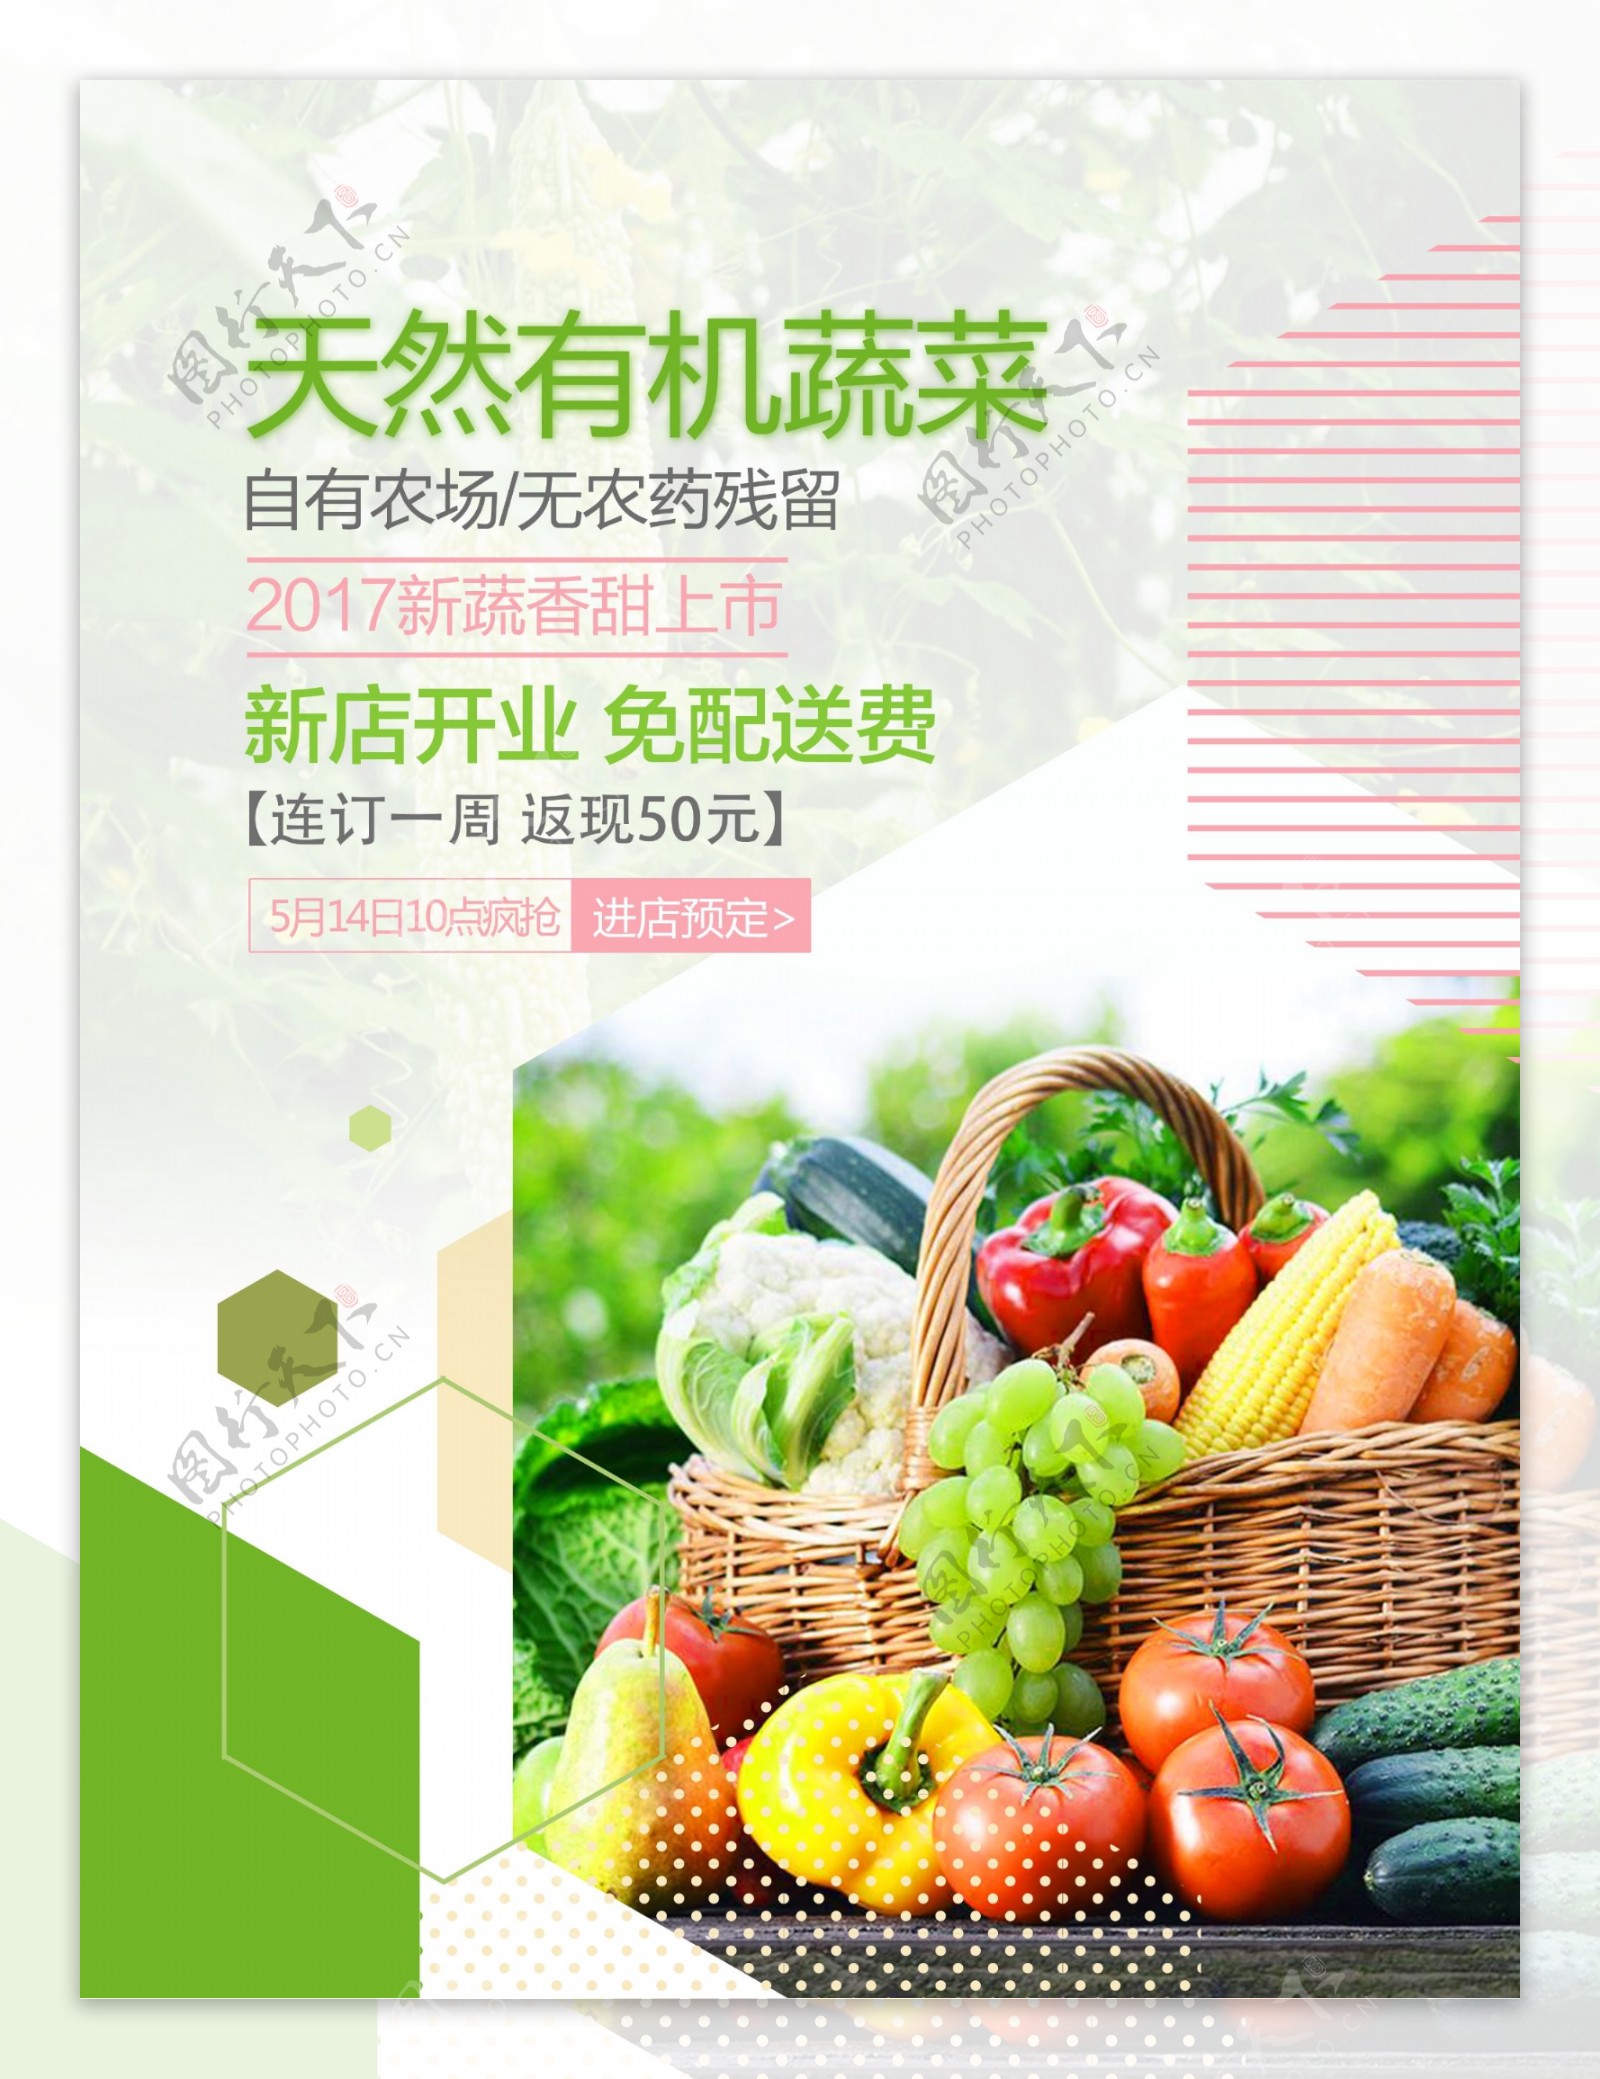 天然蔬菜上市海报设计